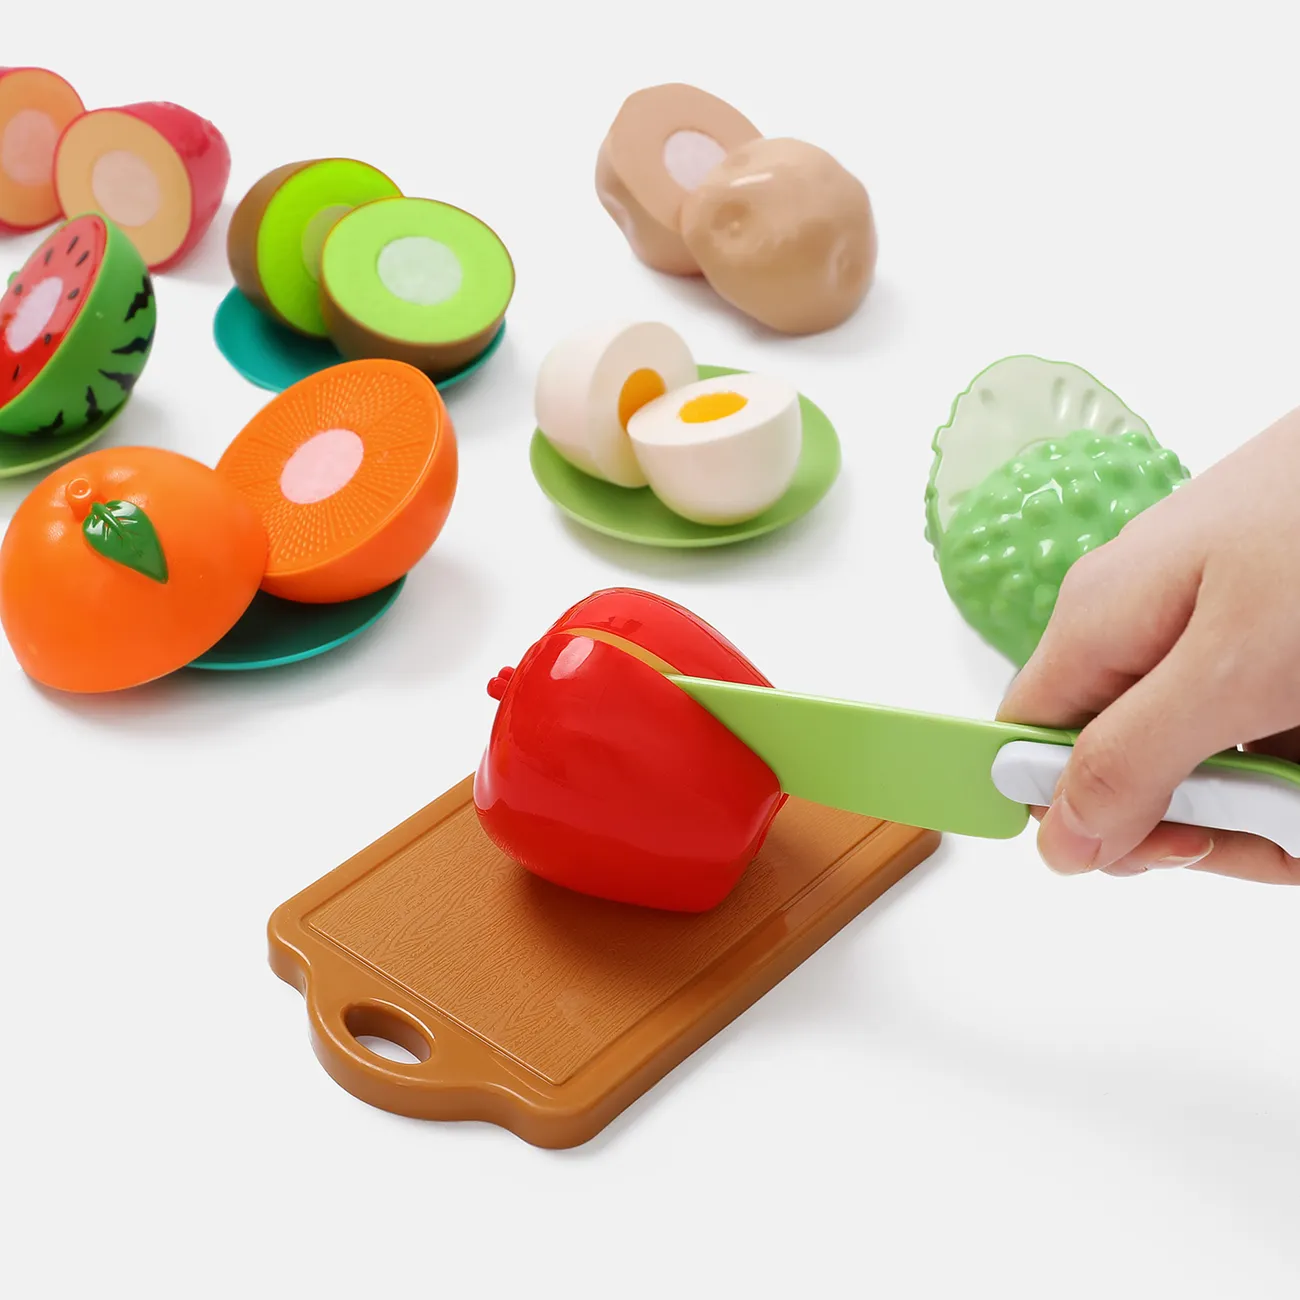 16 piezas de plástico libre de bpa para cortar alimentos, juguetes para  niños, juego de frutas y verduras cortables con cuchillos, tabla de cortar  y platos (color del cuchillo al azar) Sólo